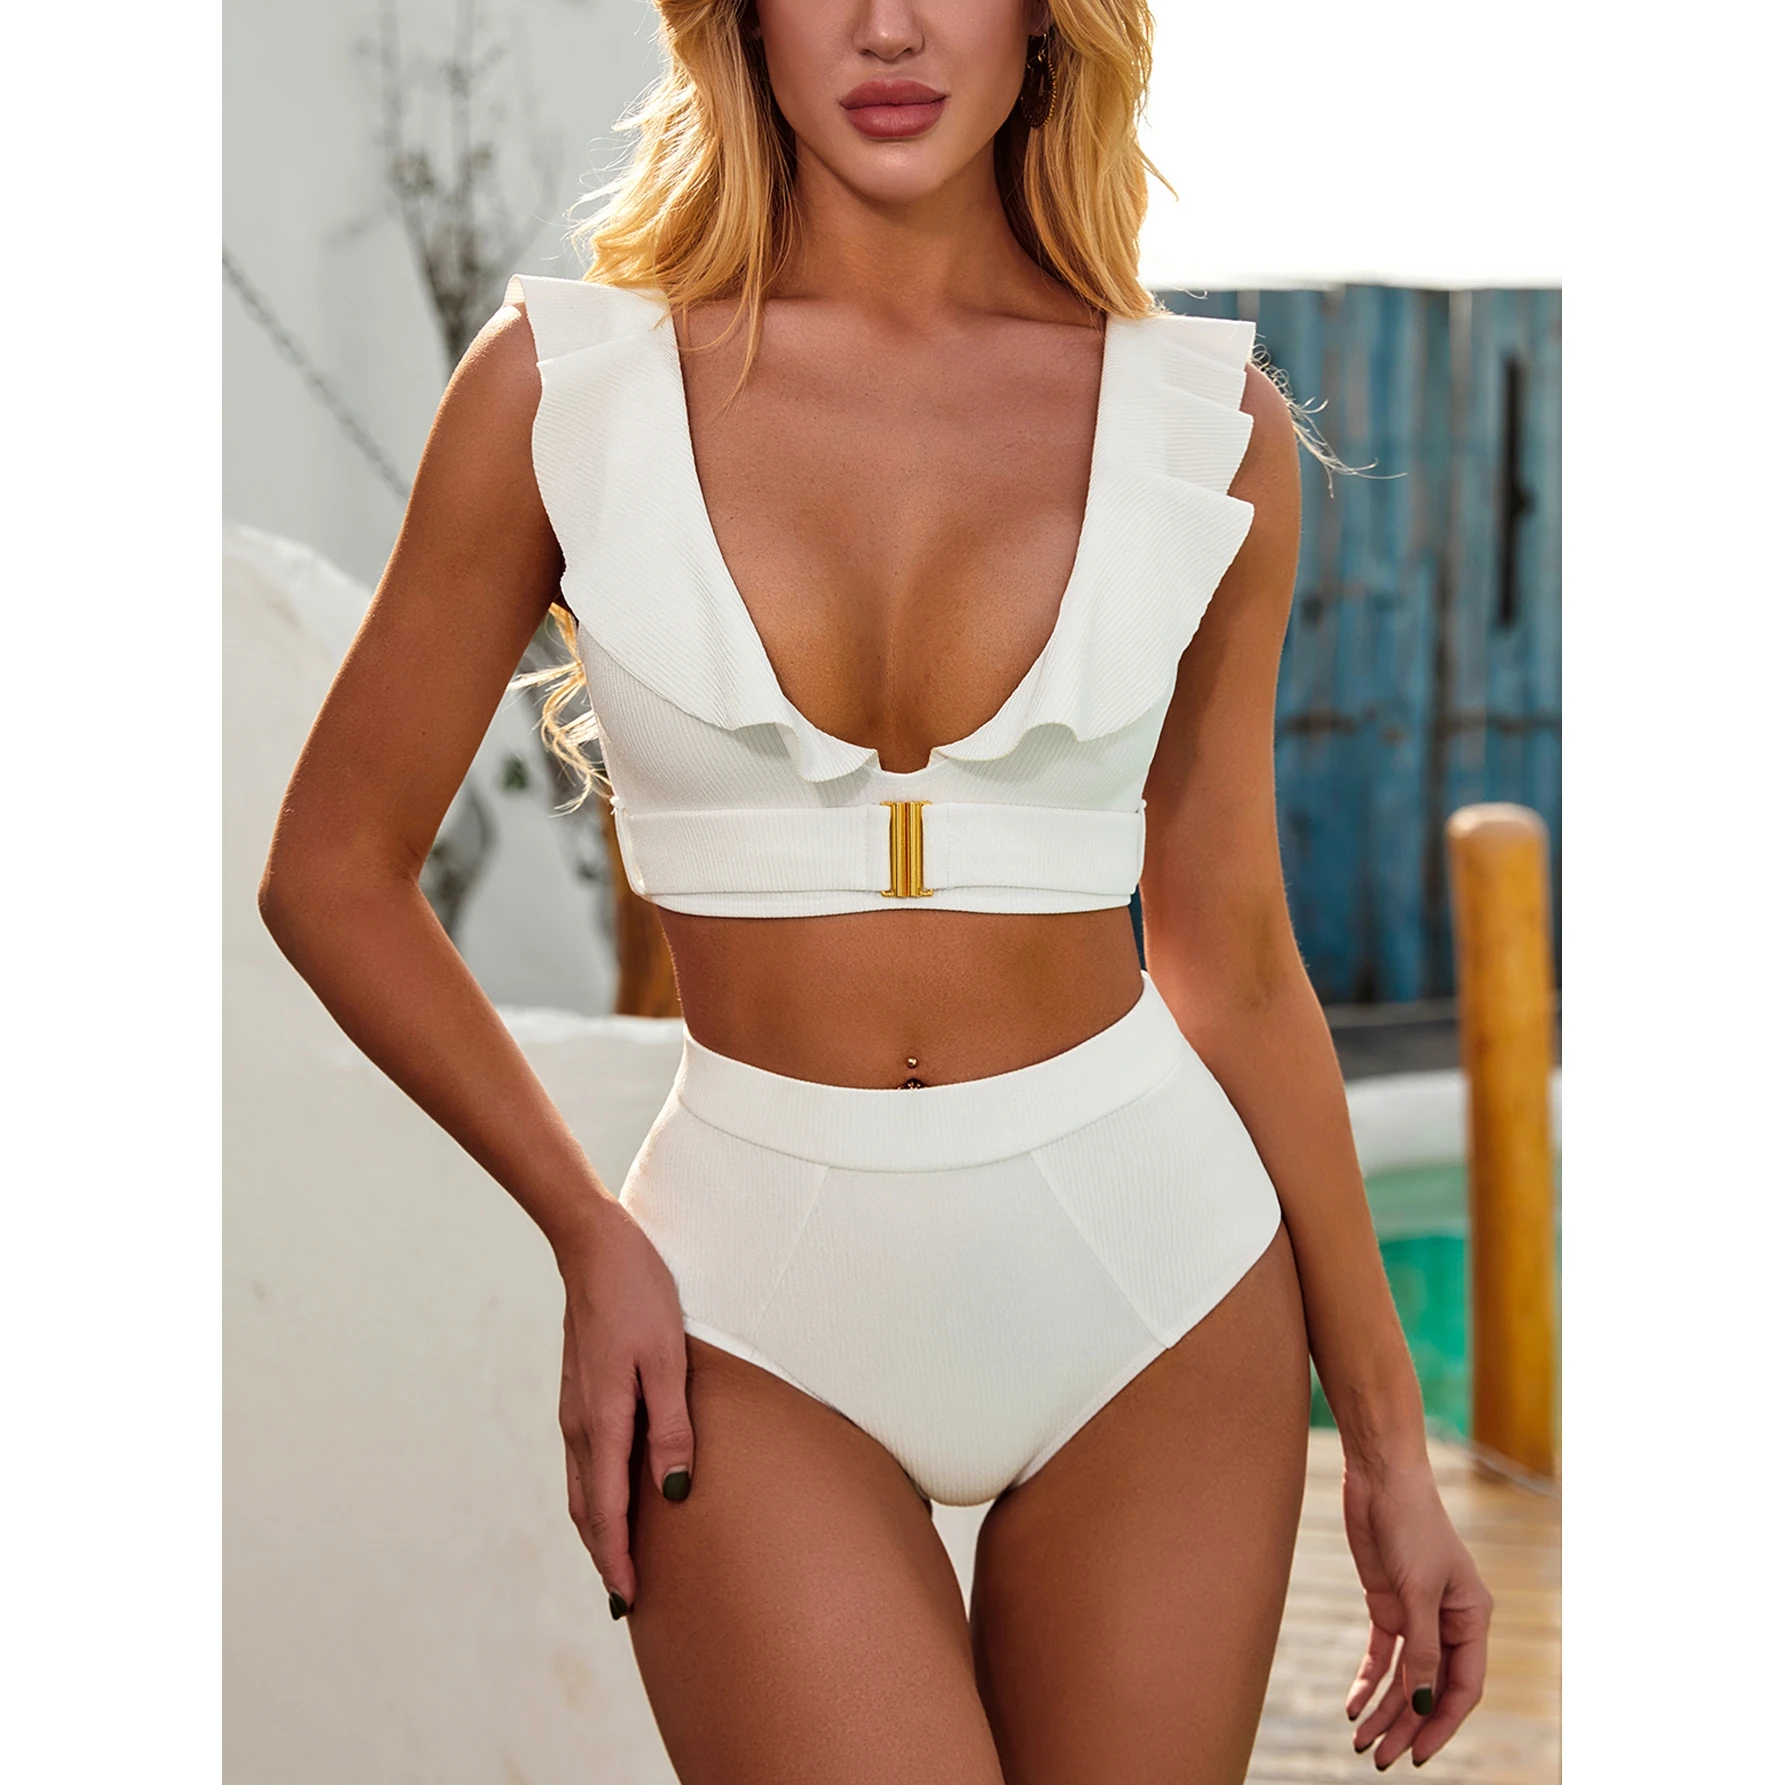 JSN6201 wholesale plain bikini high waist two piece pure swimsuits ruffle strap fitness bikini with belt ribbed fabric bikinis, White